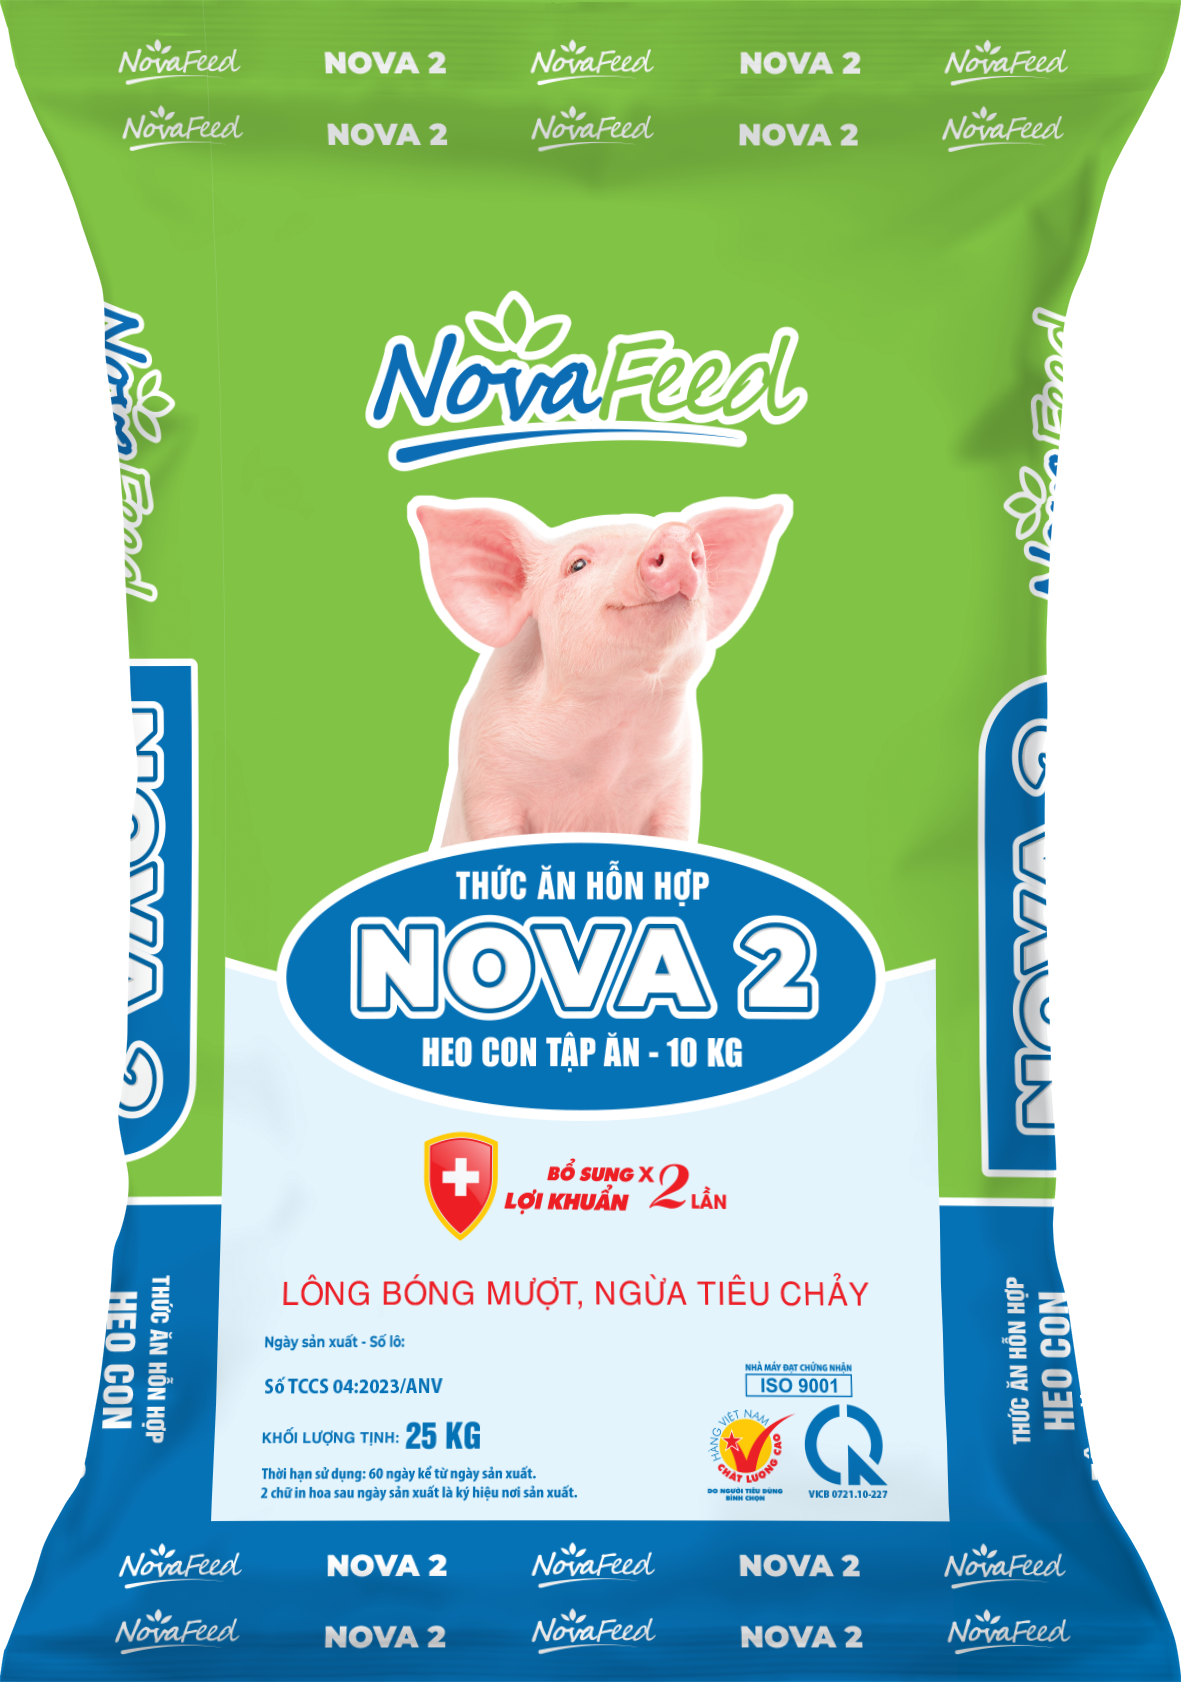 Thức ăn hỗn hợp dành HEO CON TẬP ĂN - 10kg NOVA 2